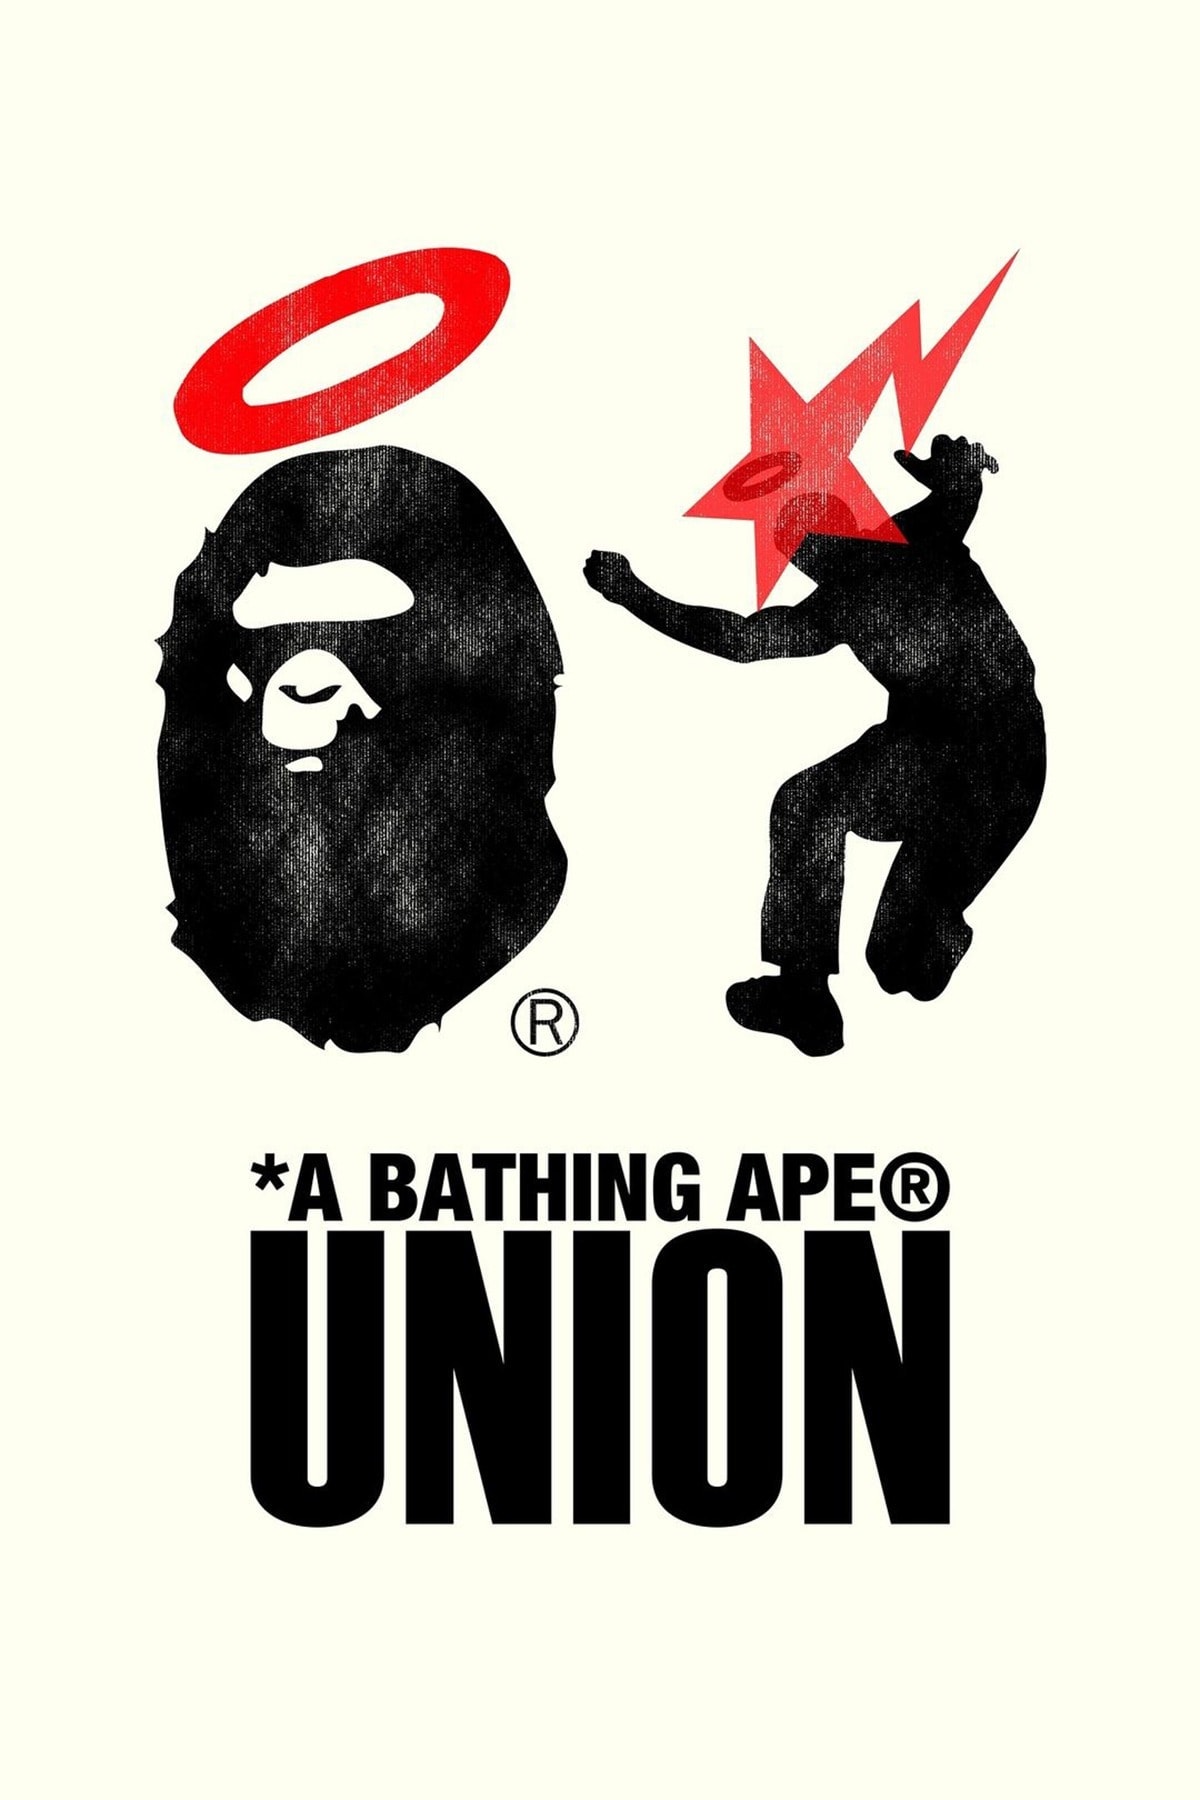 UNION 預告即將攜手 A BATHING APE® 推出全新聯名系列